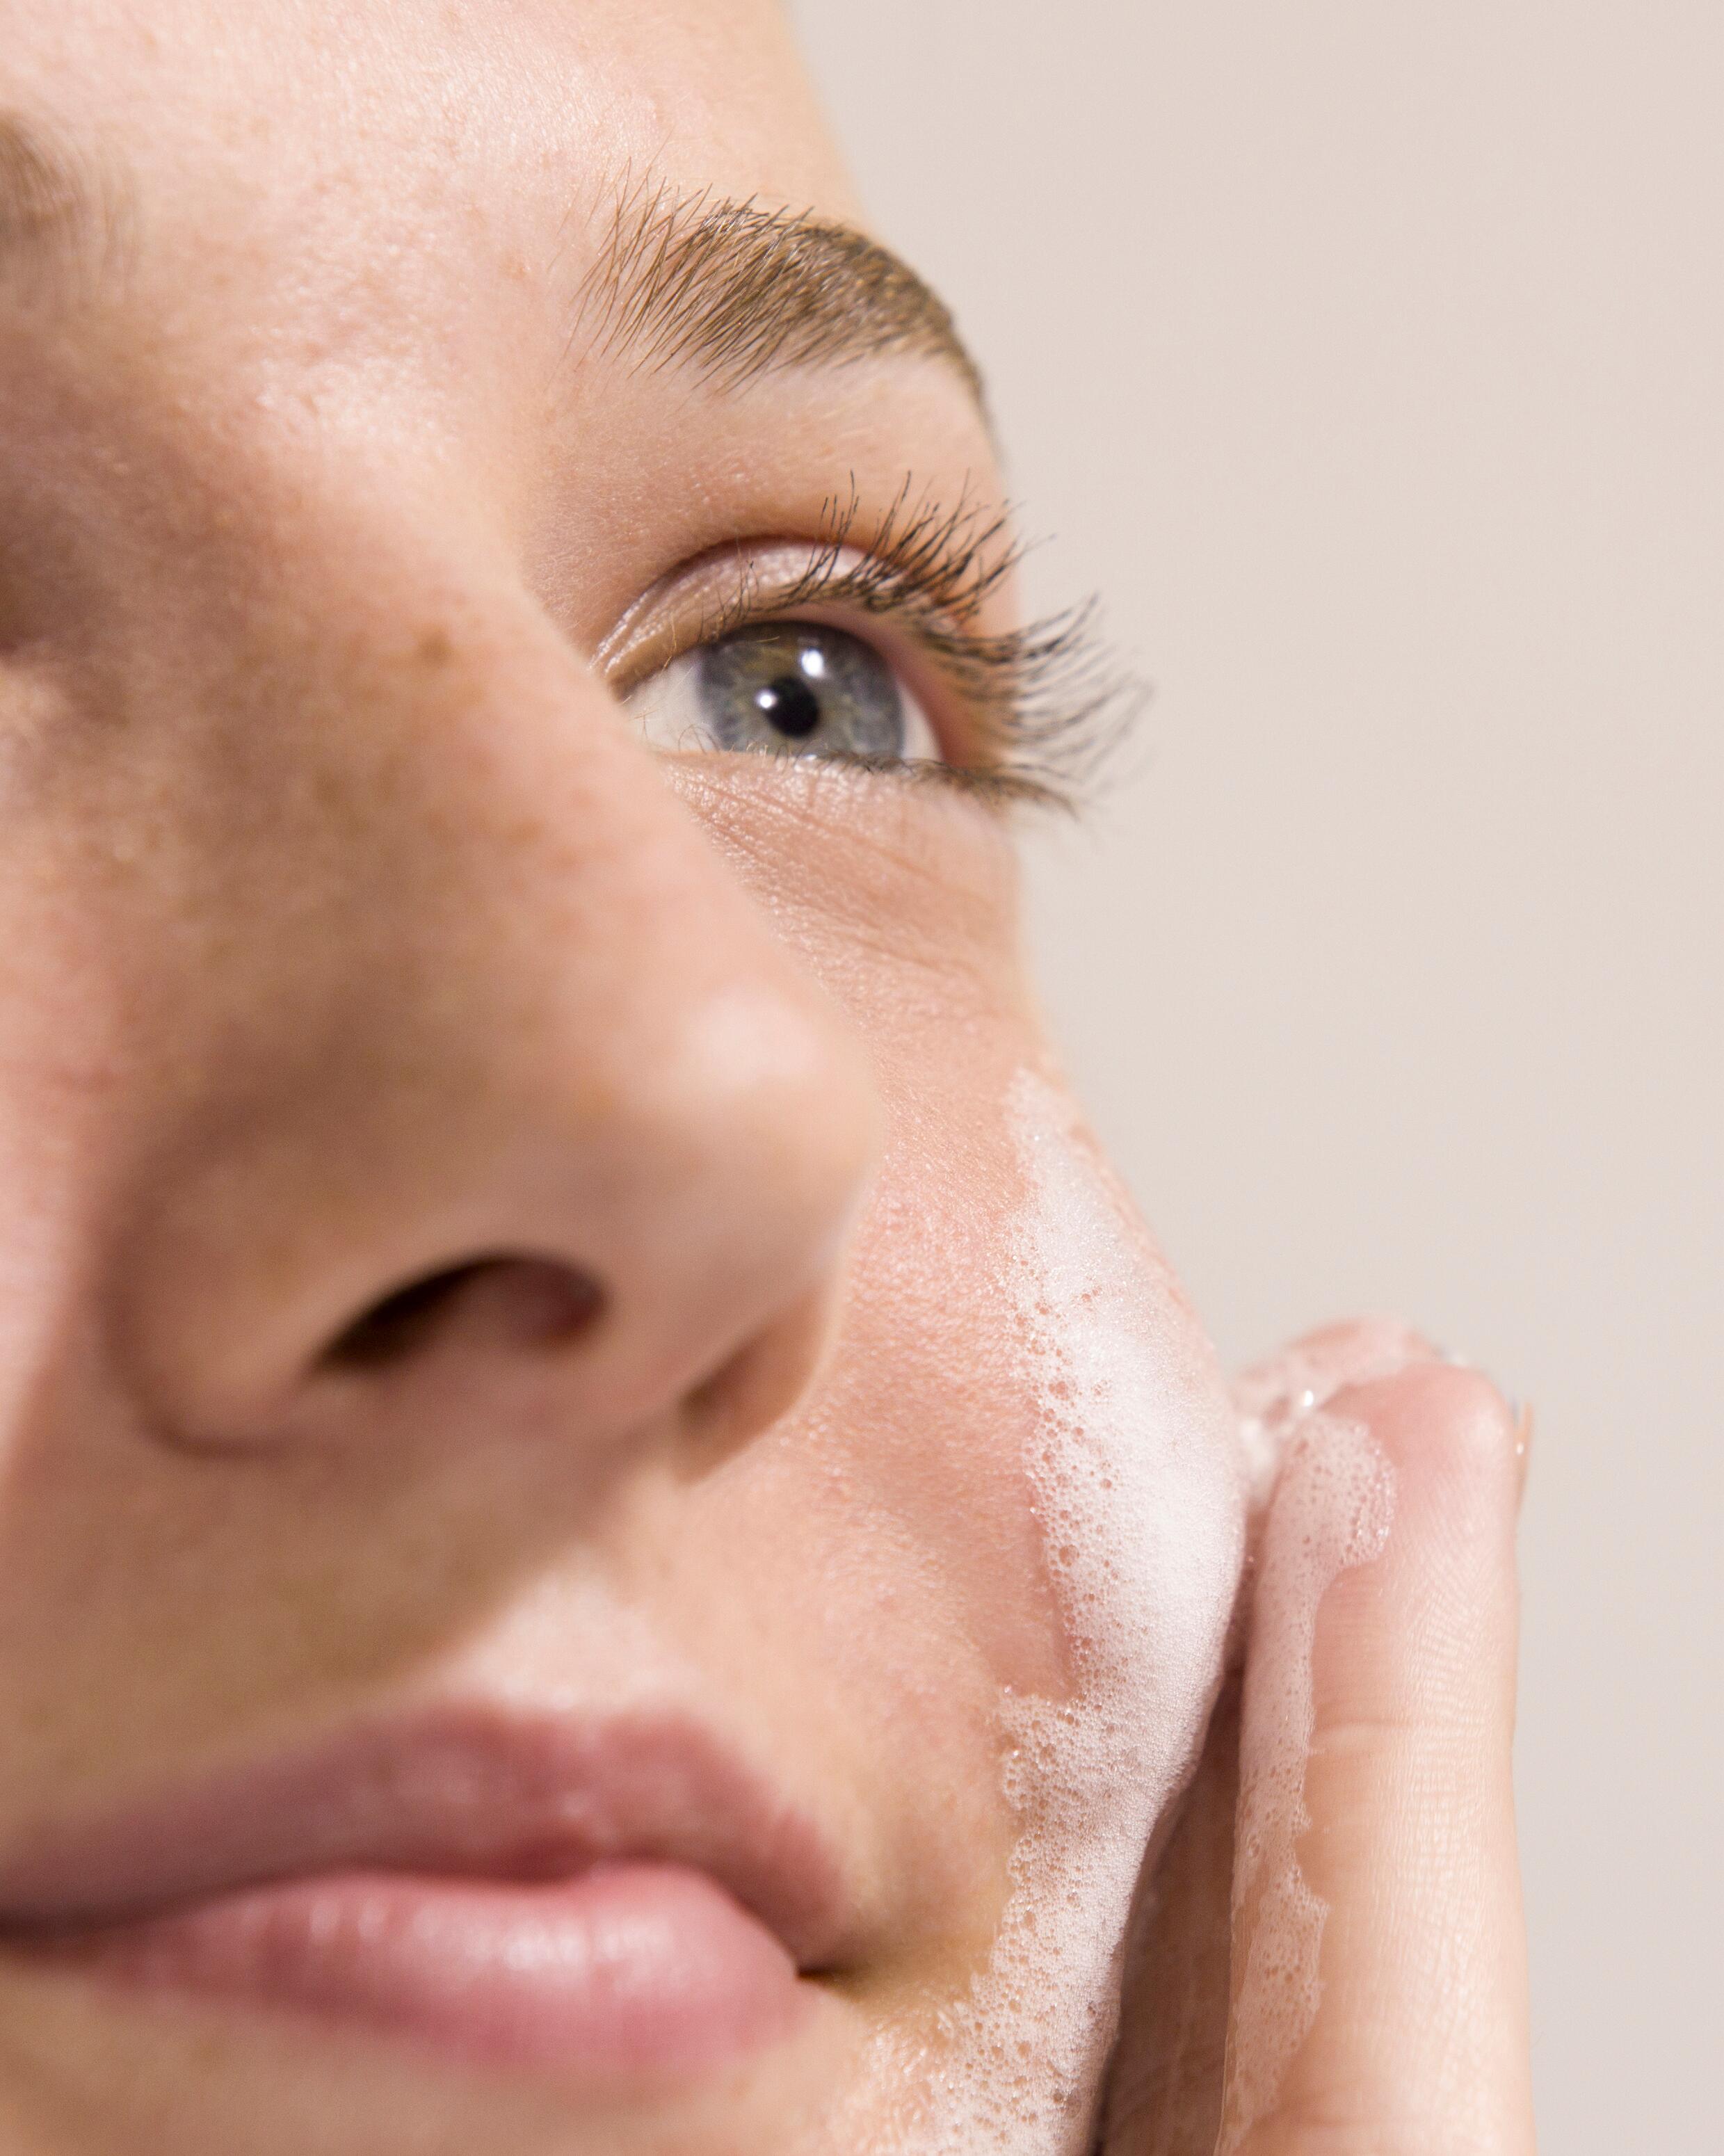 Mit der richtigen Kosmetik bekämpfen Sie Pickel und erzielen ein ebenmäßiges Hautbild